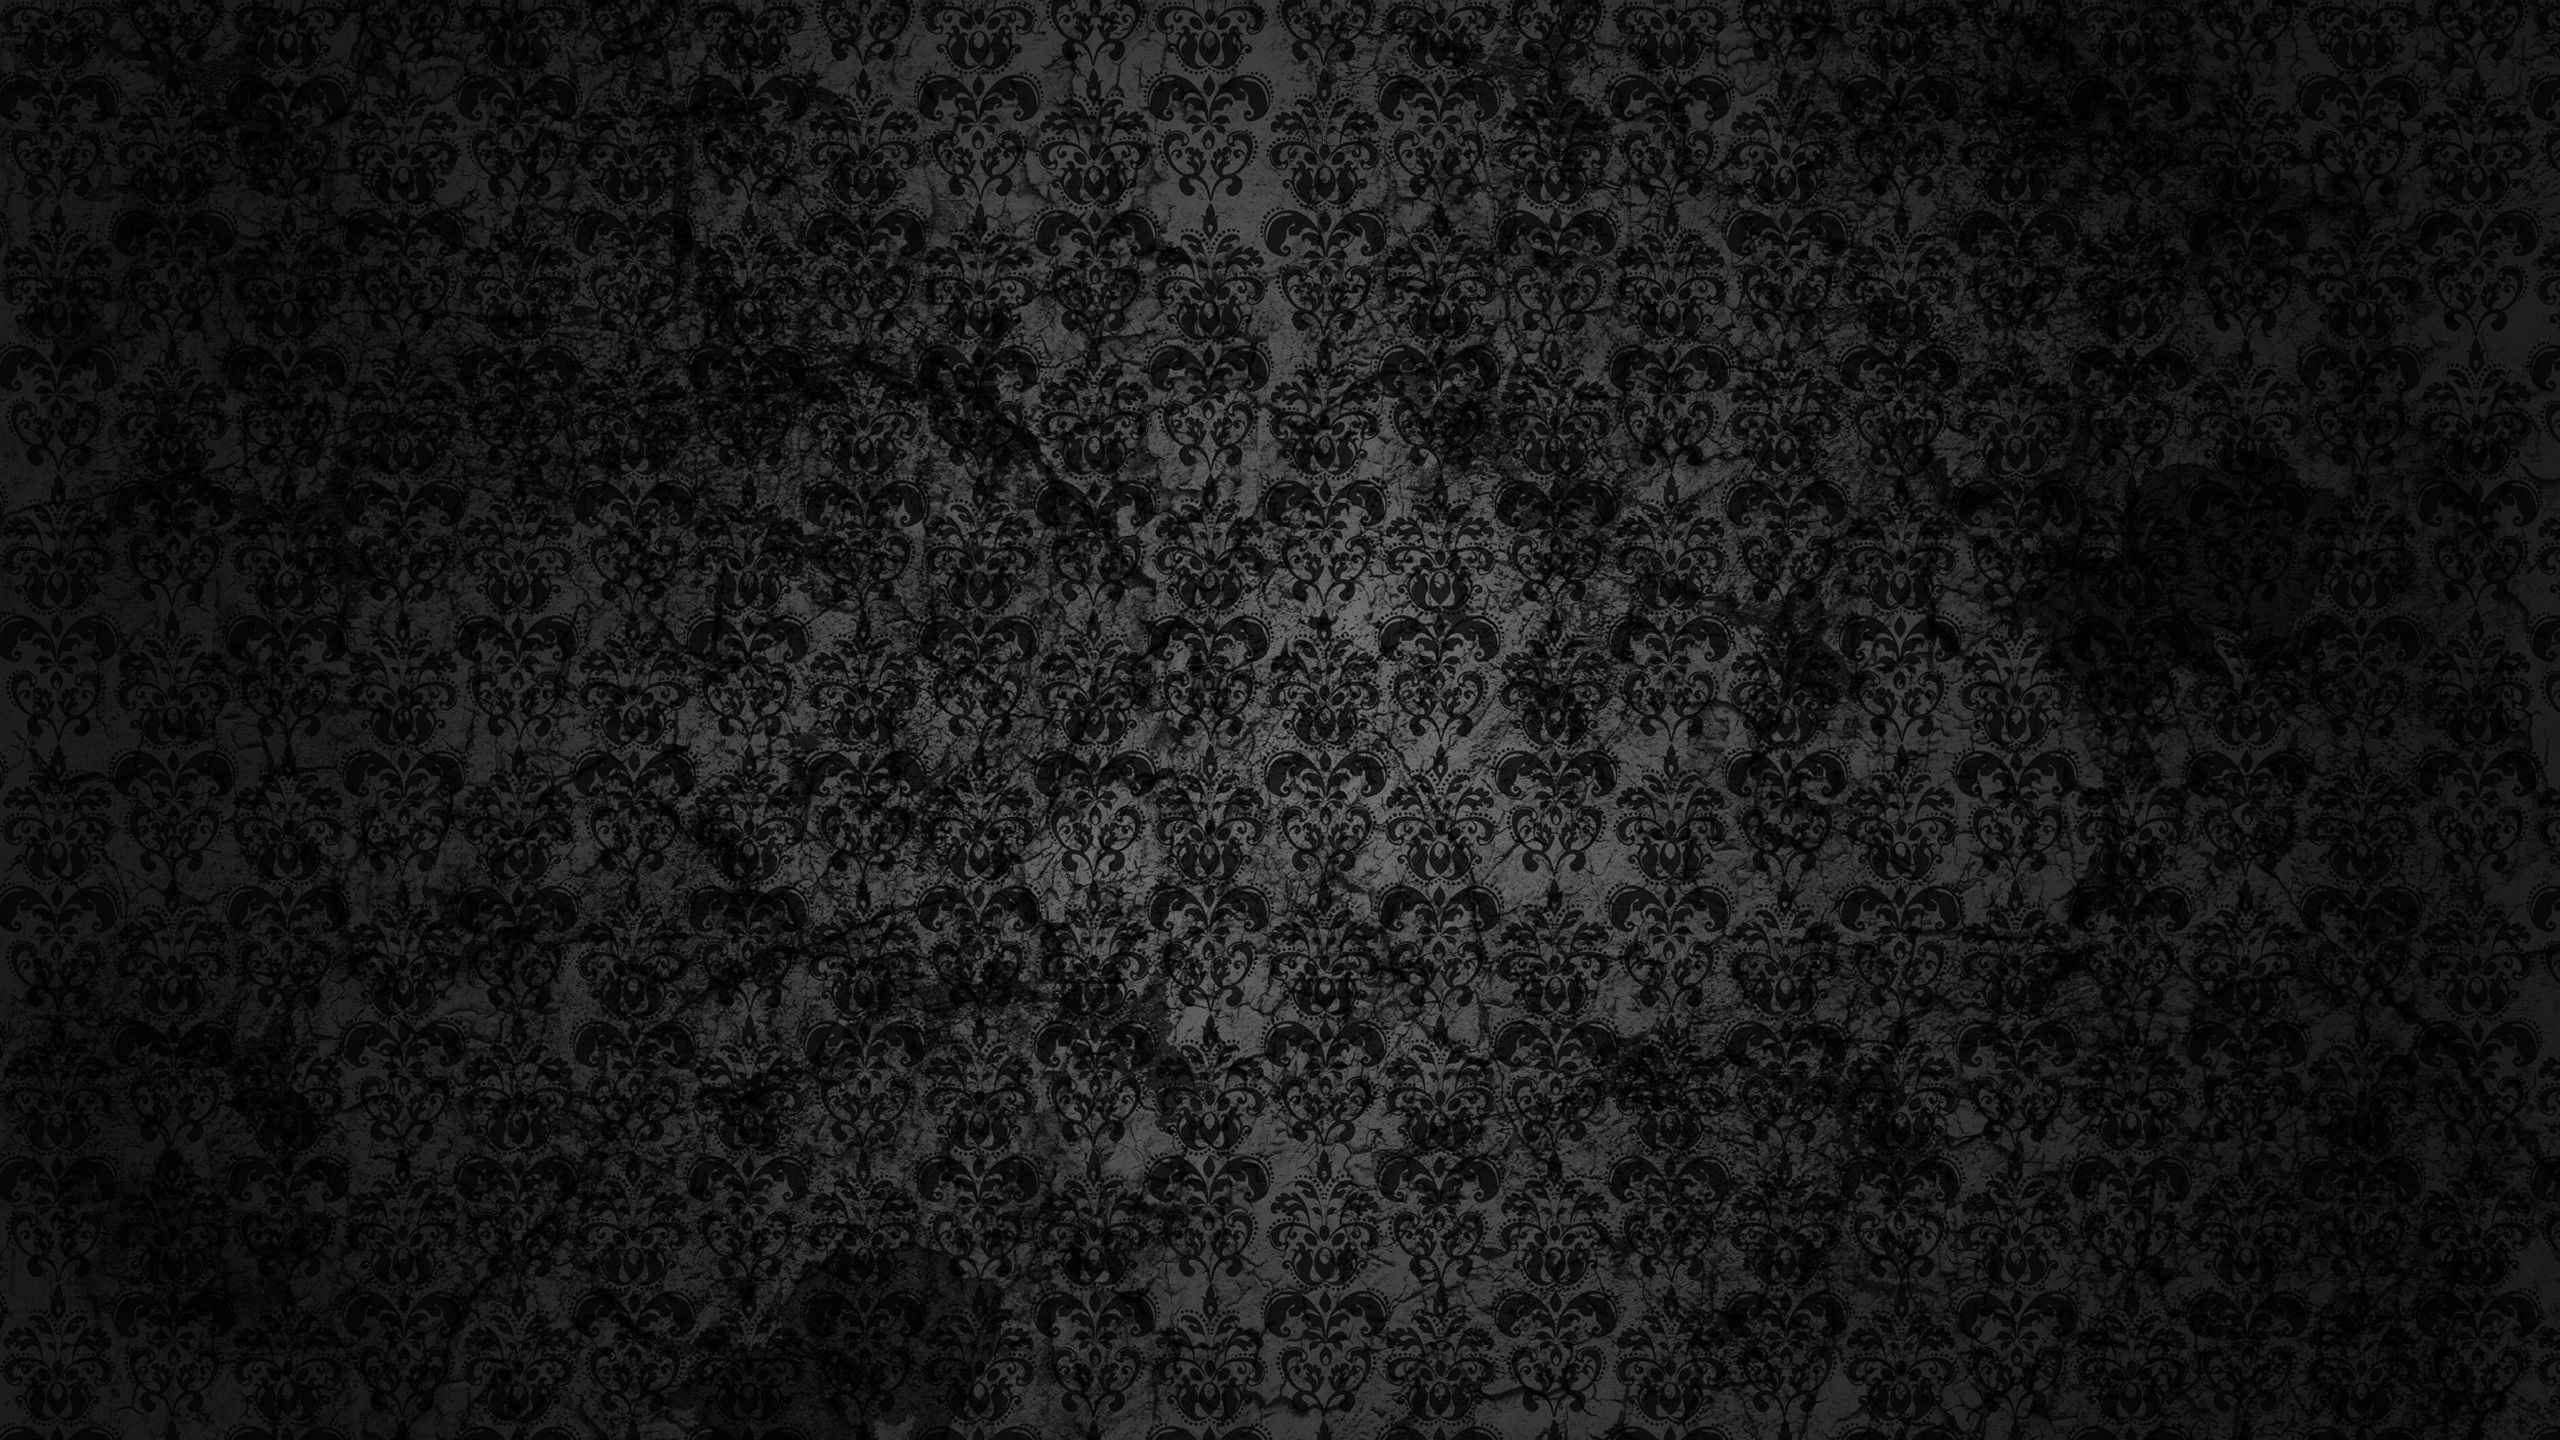 Download Wallpaper 2560x1440 Patterns Background Dark Texture